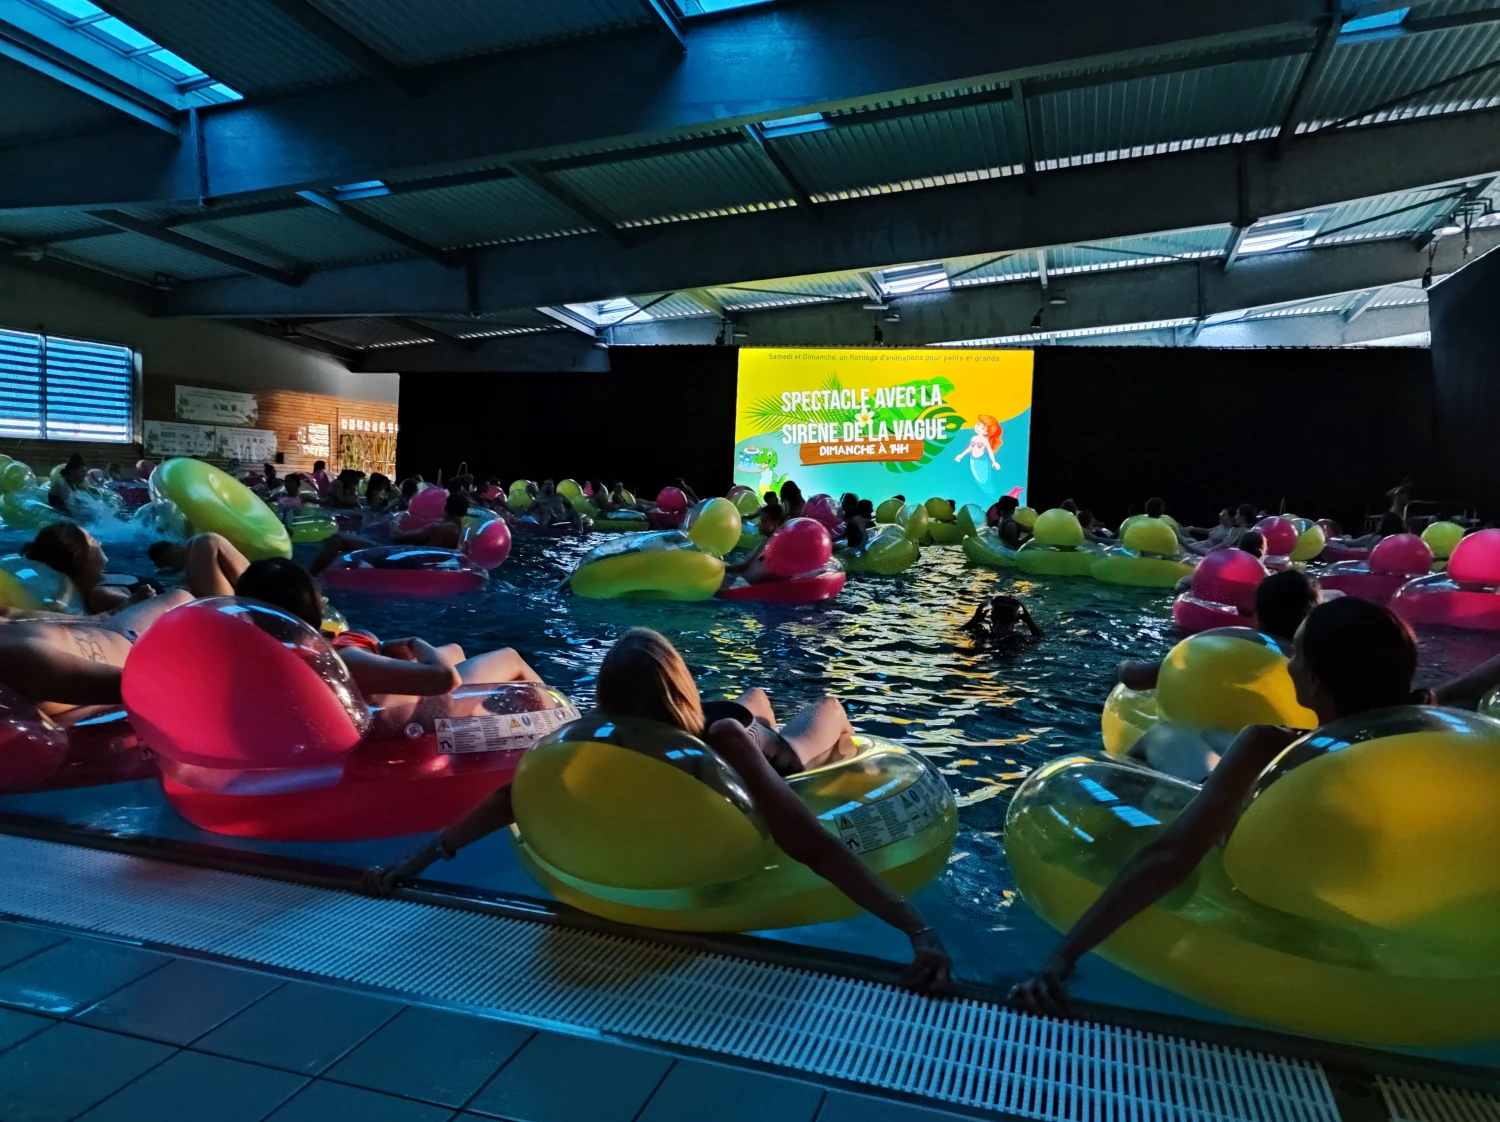 Photo prise dans une piscine plongée dans le noir. Un écran géant est placé au centre de la photo. Le bassin est remplit de personnes sur des boudins flottant en regardant la scéance.